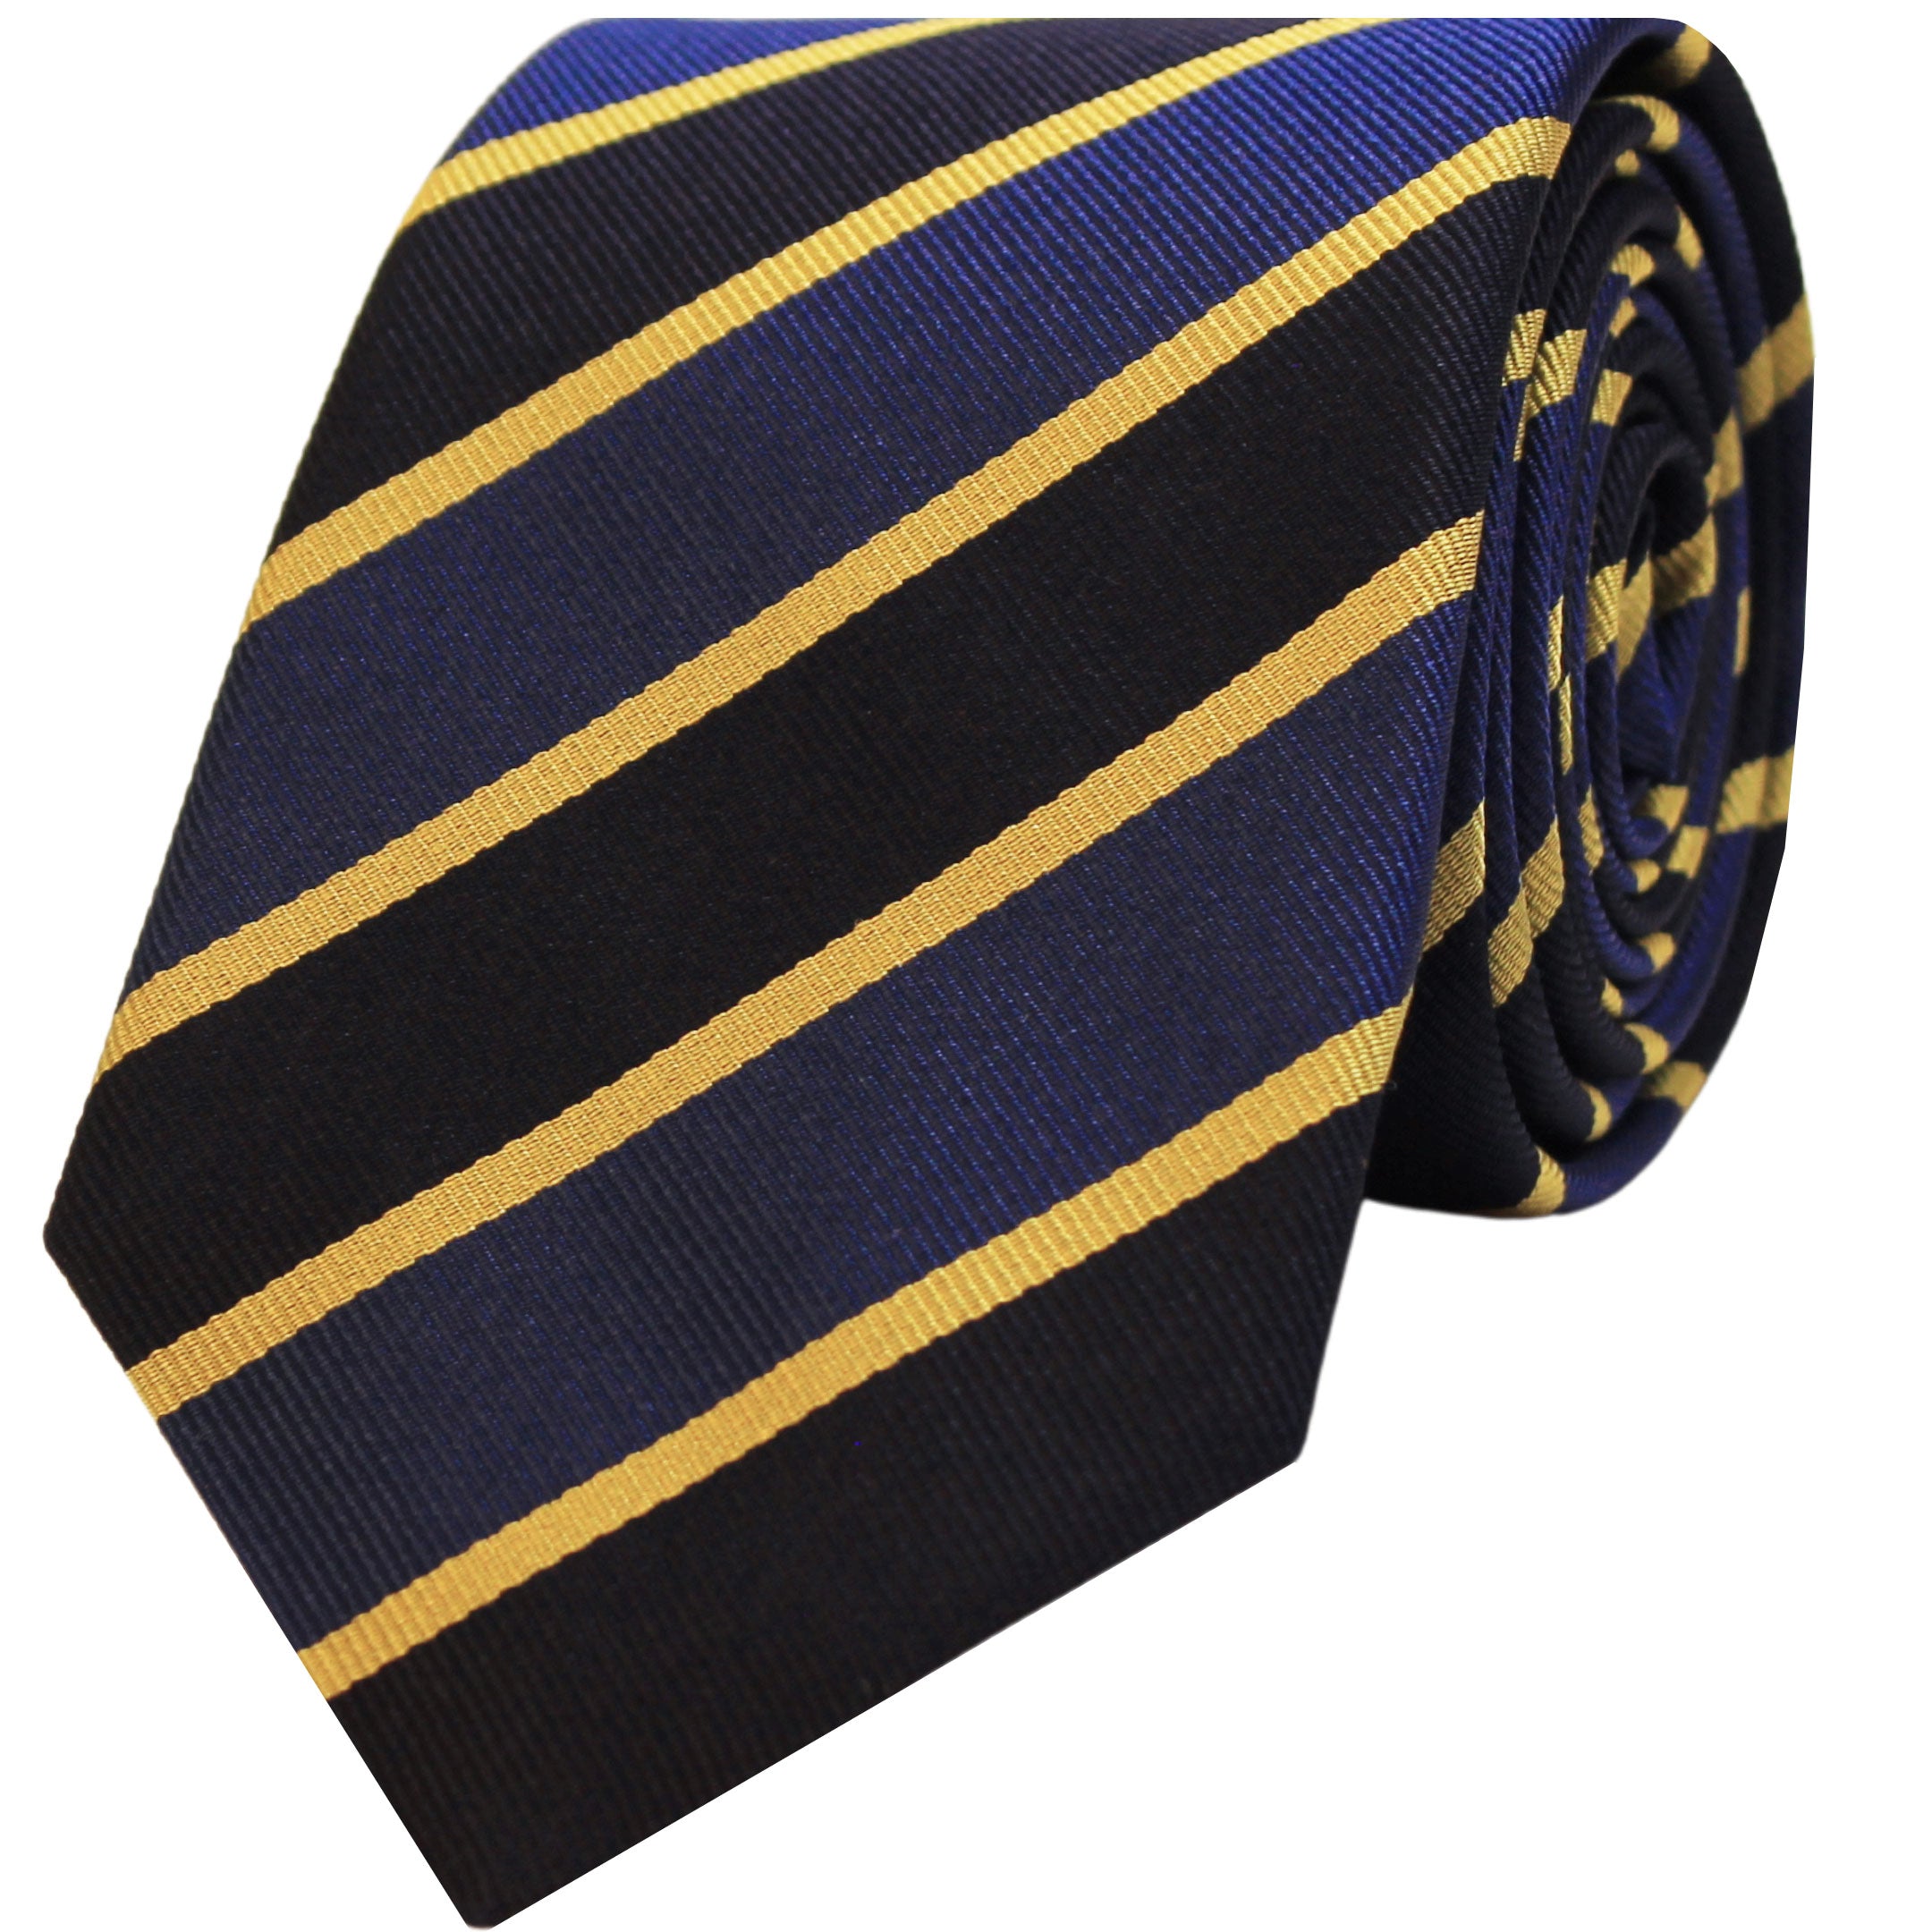 Essex Regimental Silk Tie